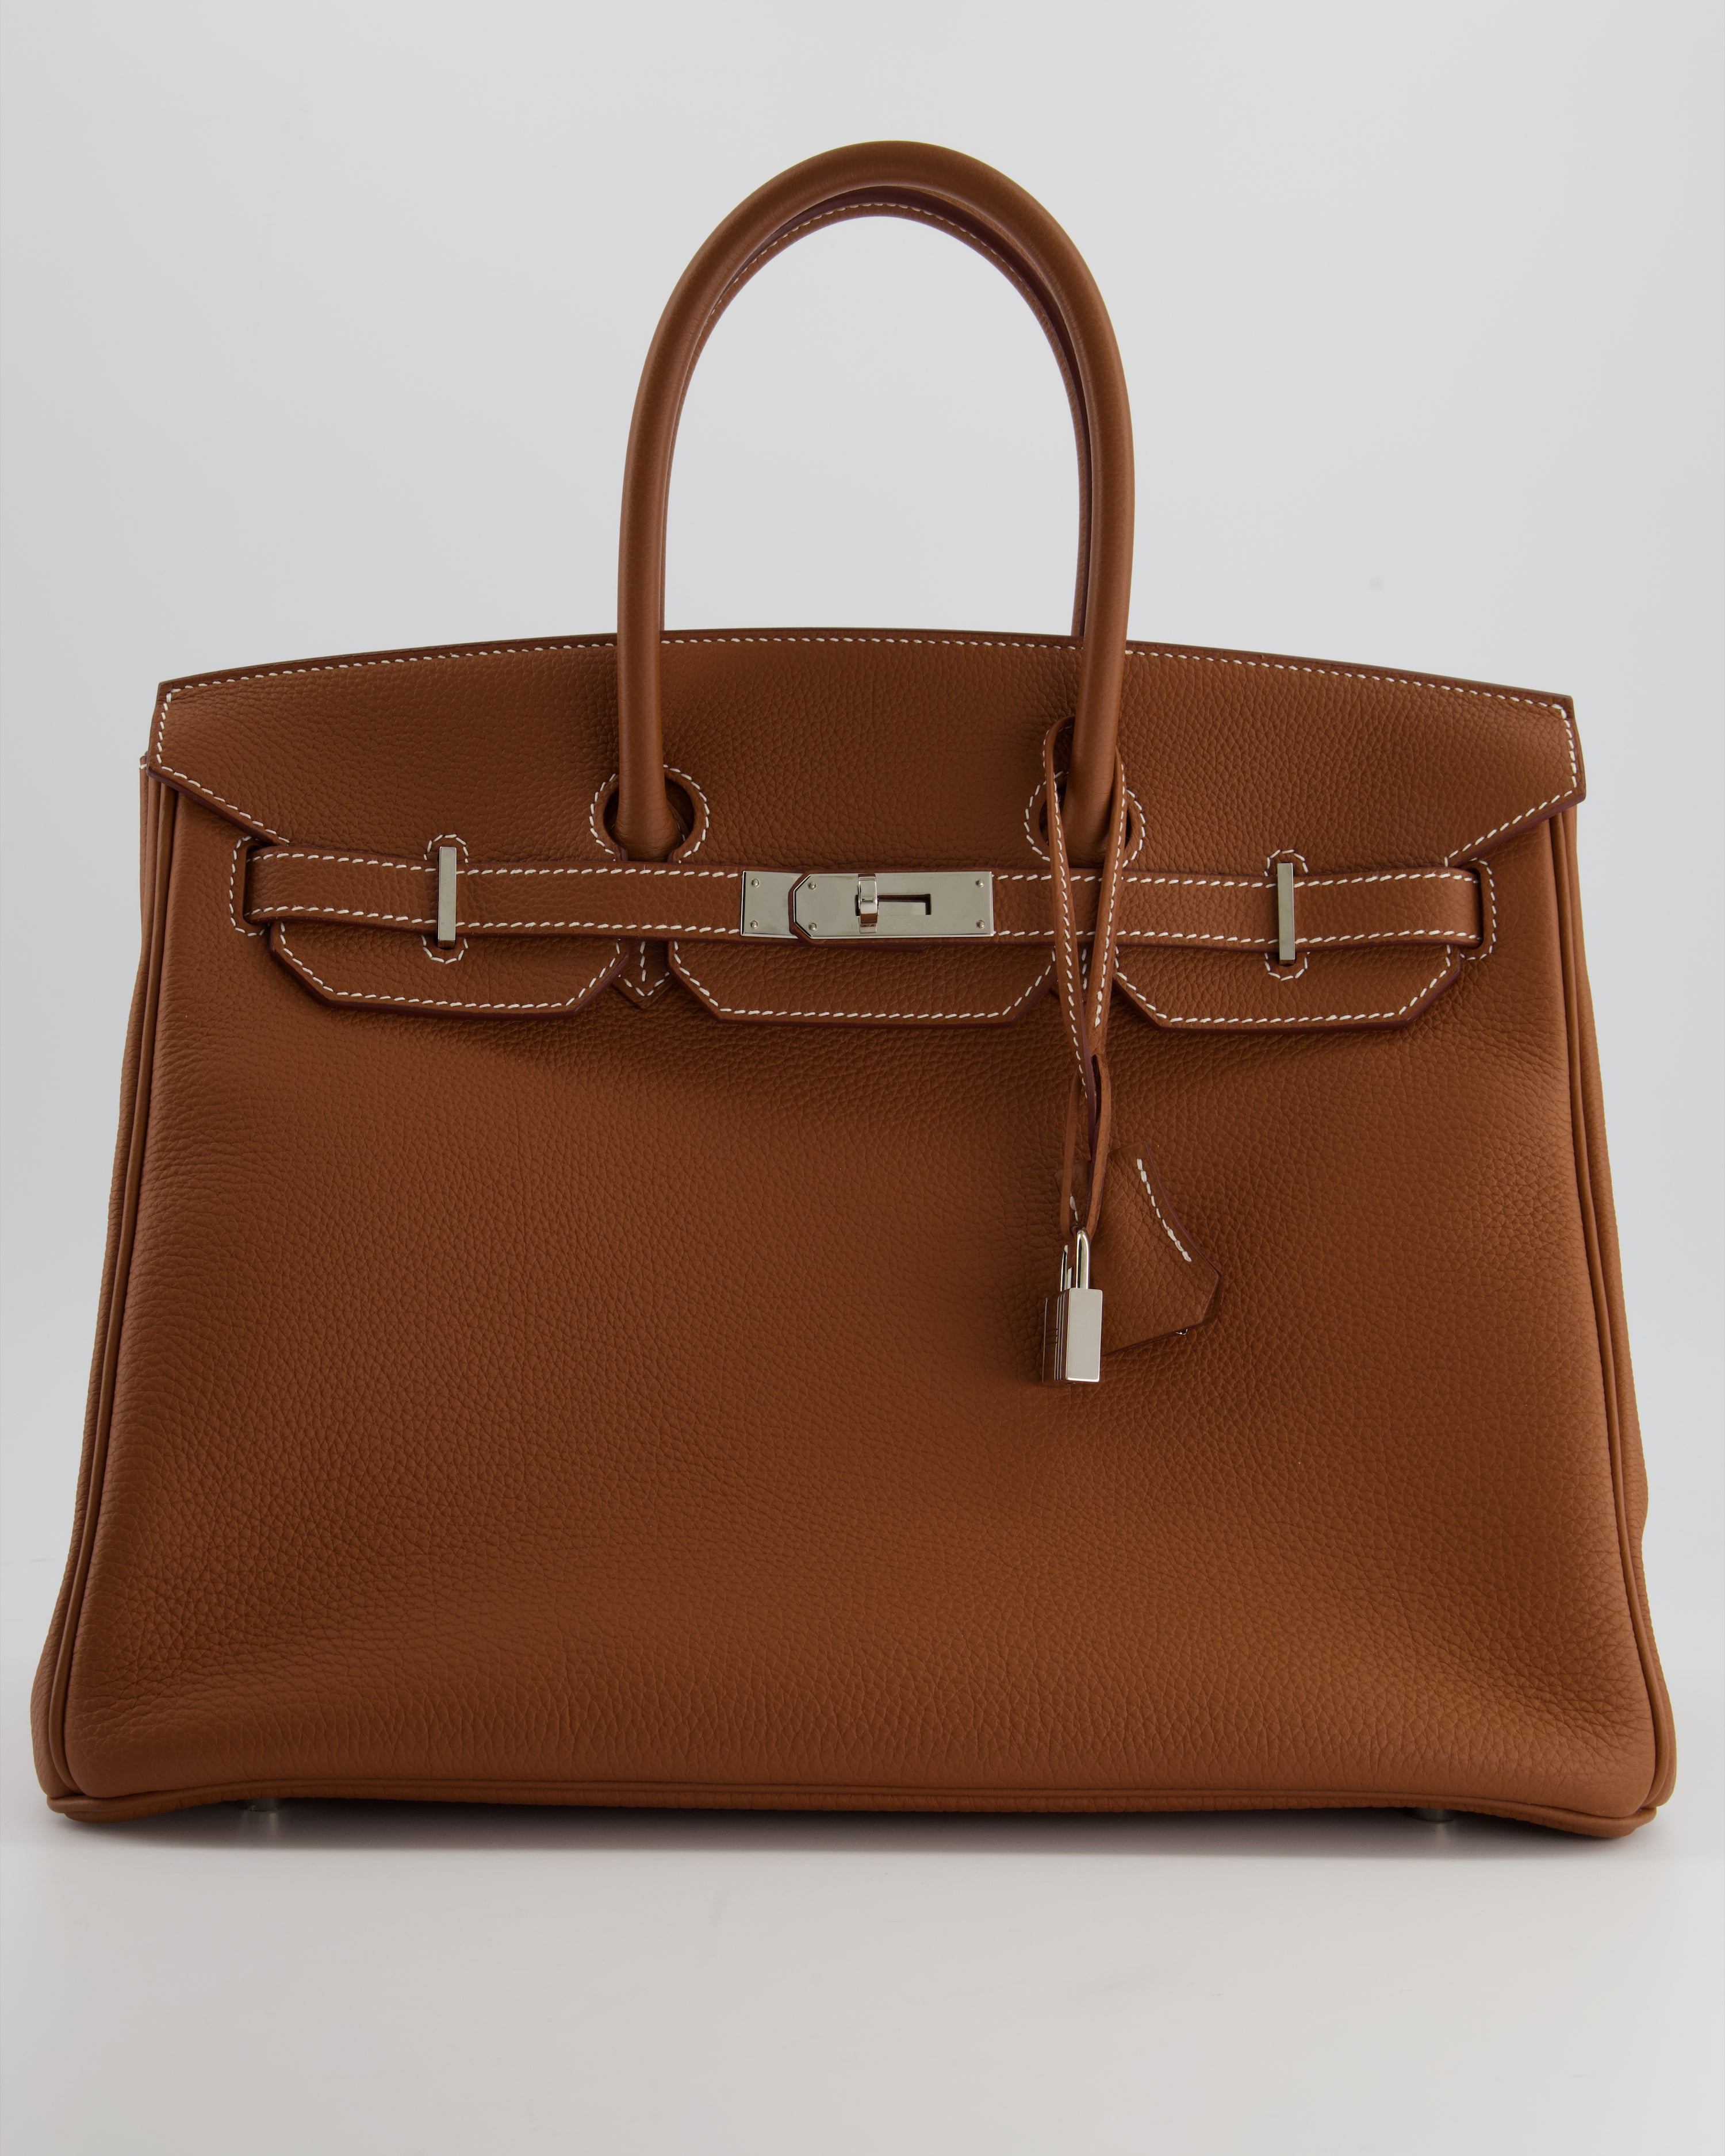 Hermès Gold Birkin 35cm of Togo Leather with Palladium Hardware, Handbags  & Accessories Online, Ecommerce Retail